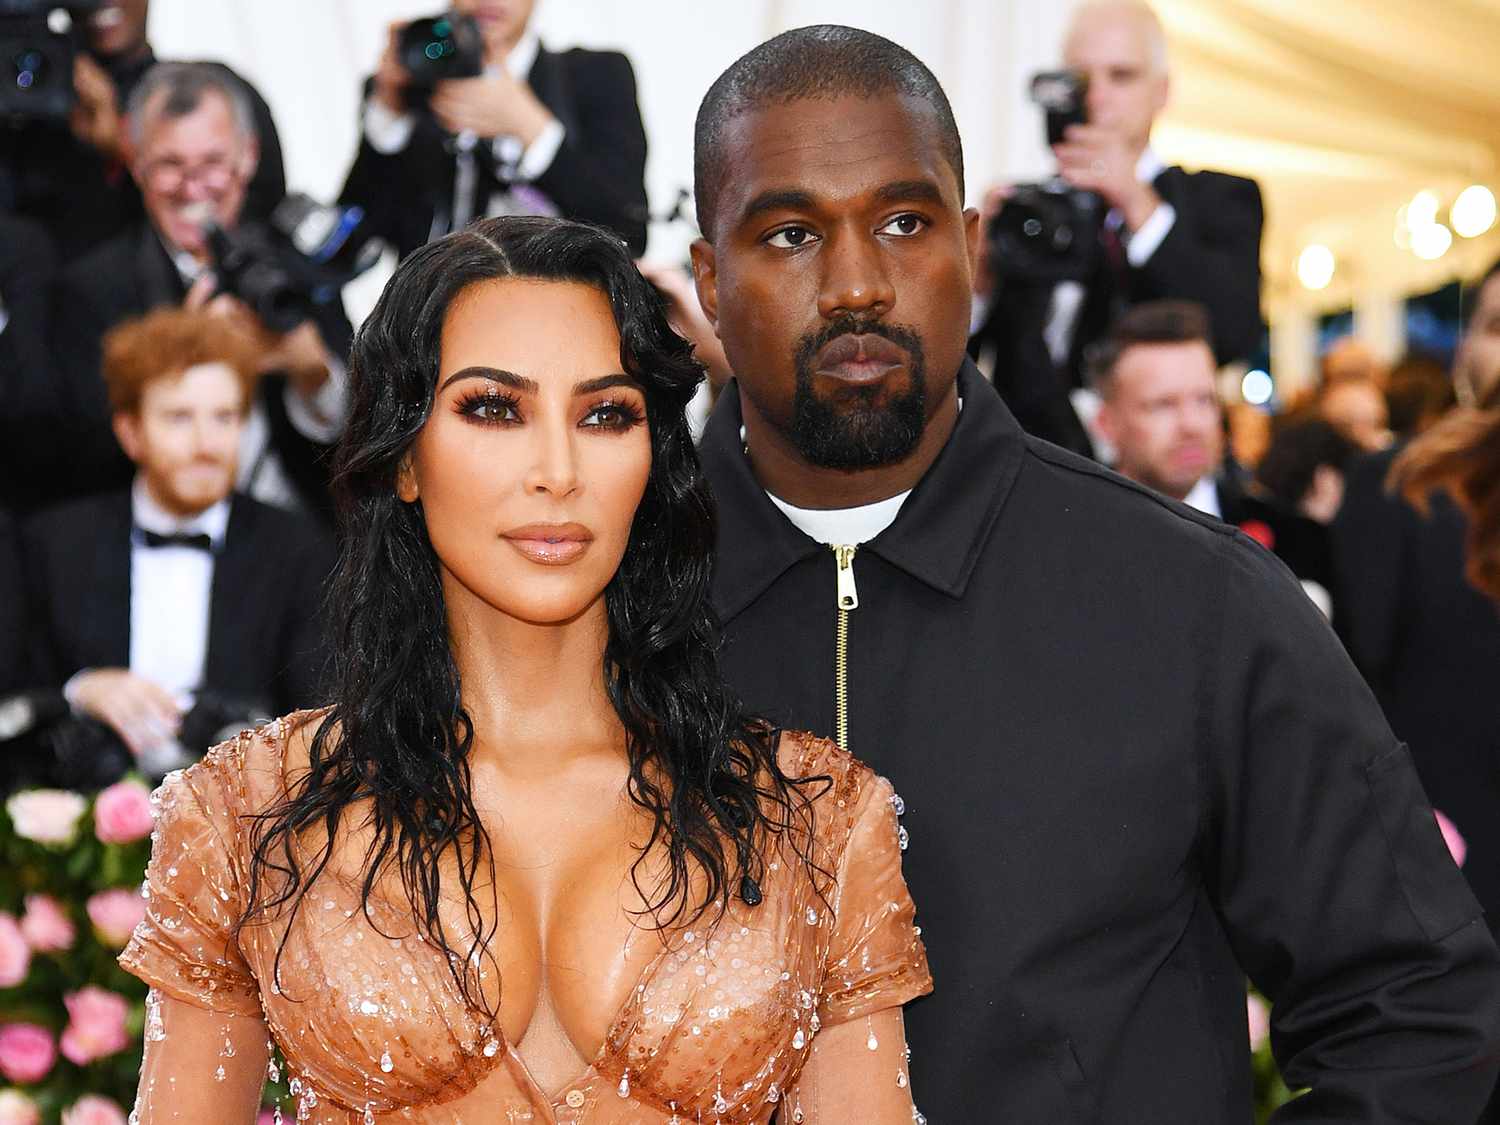 Ο Kanye West προσπαθεί να λύσει δημόσια τις διαφορές του με την Kim Kardashian